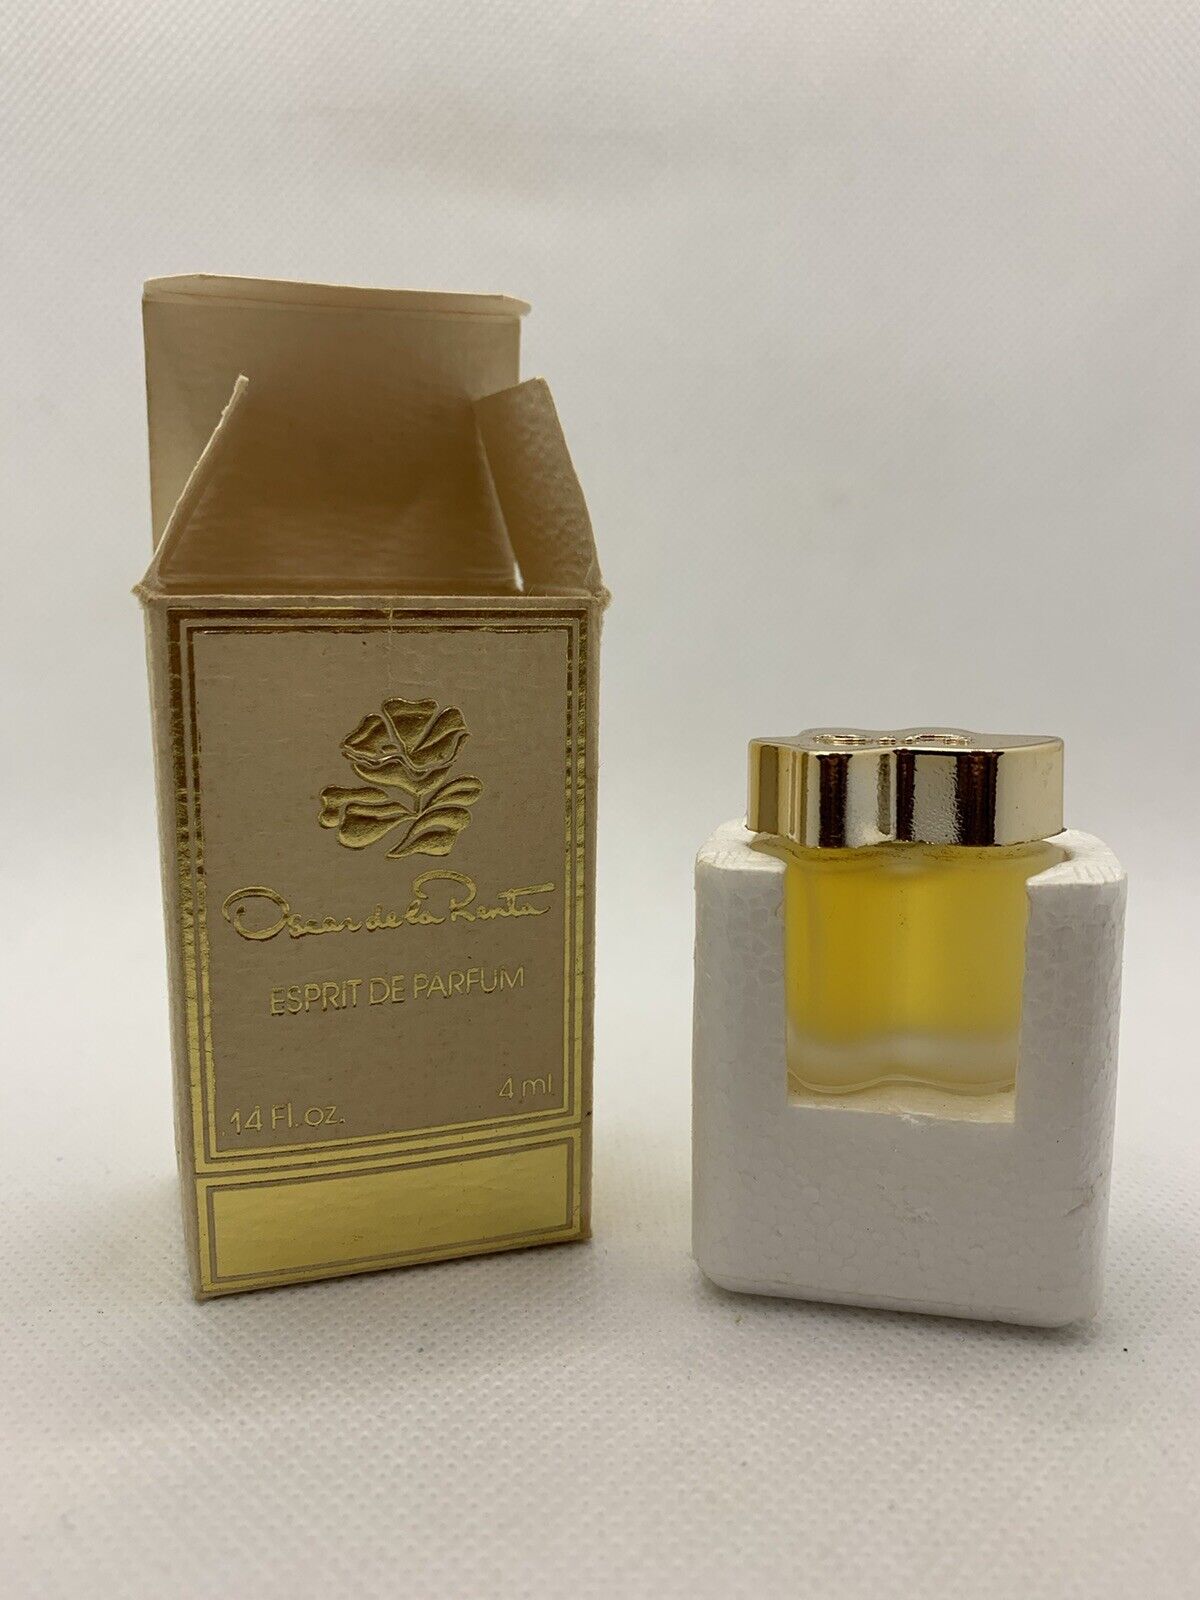 VINTAGE 1987 Oscar De La Renta Esprit Parfum Mini Perfume 4 ml - UNUSED